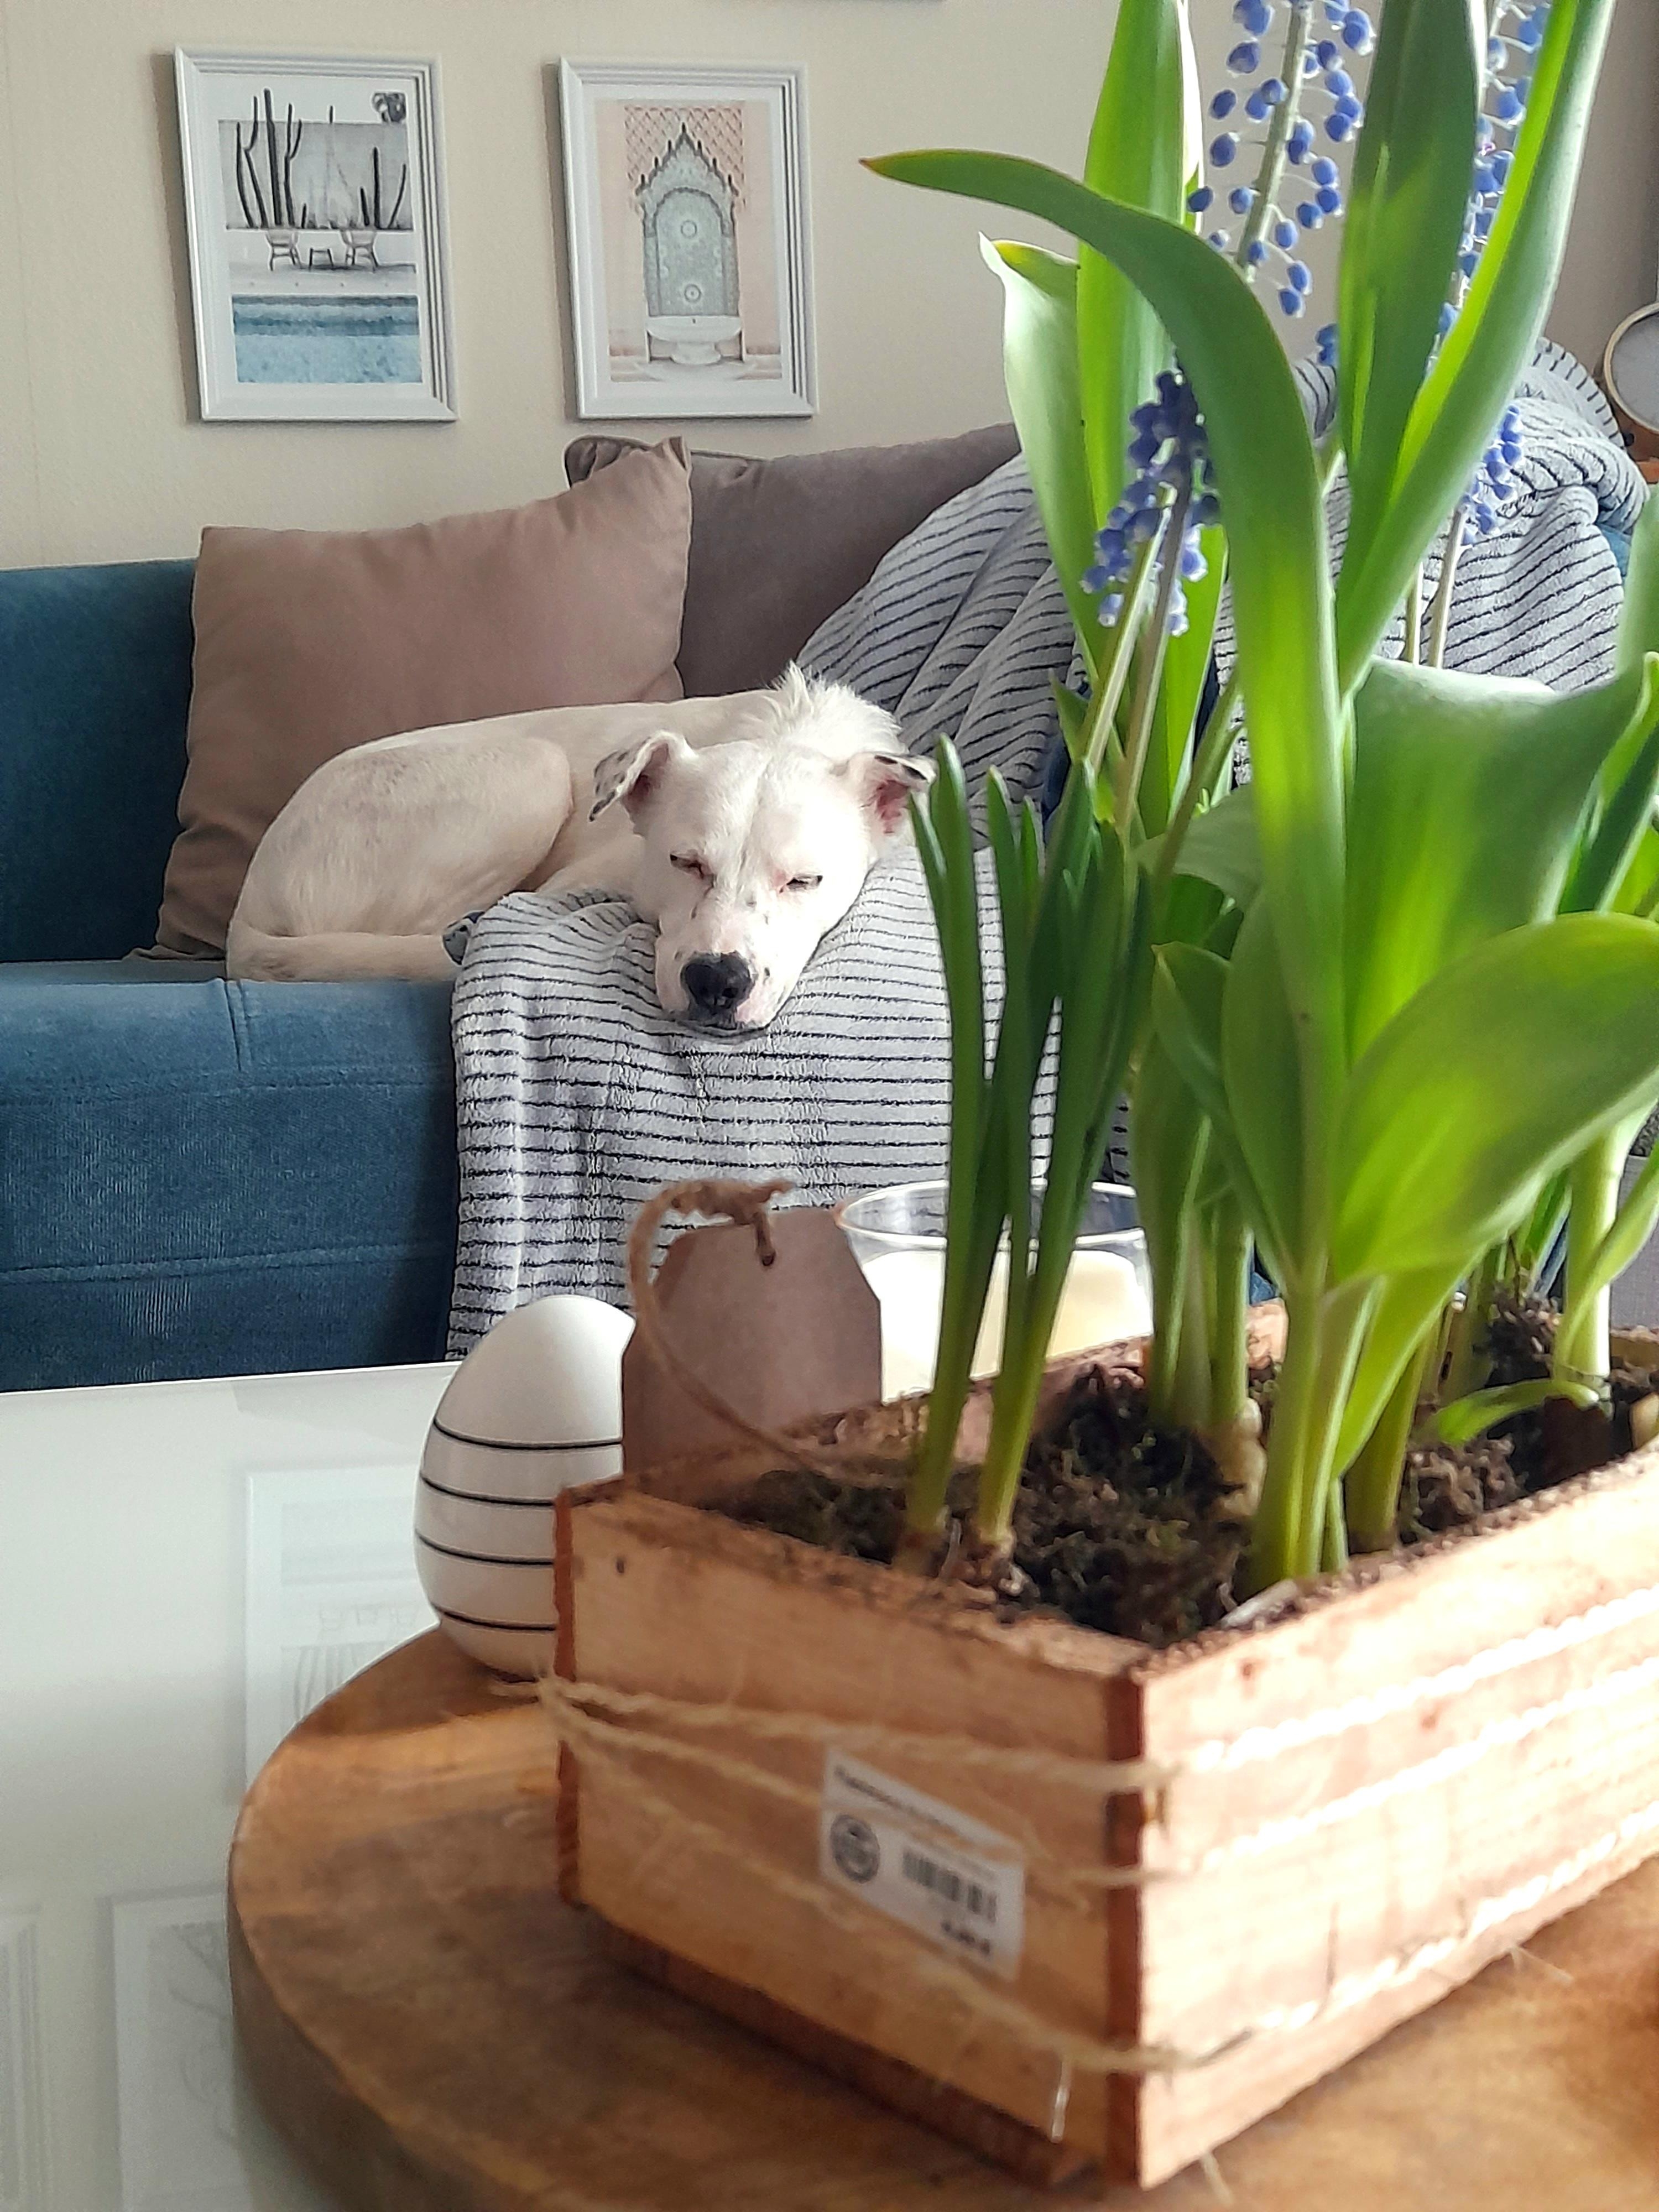 Das Wochenende naht! 💙🤍

#couch #springflower #dog #couchtisch #bilderwand #holzkiste #blumenzwiebel #decke 